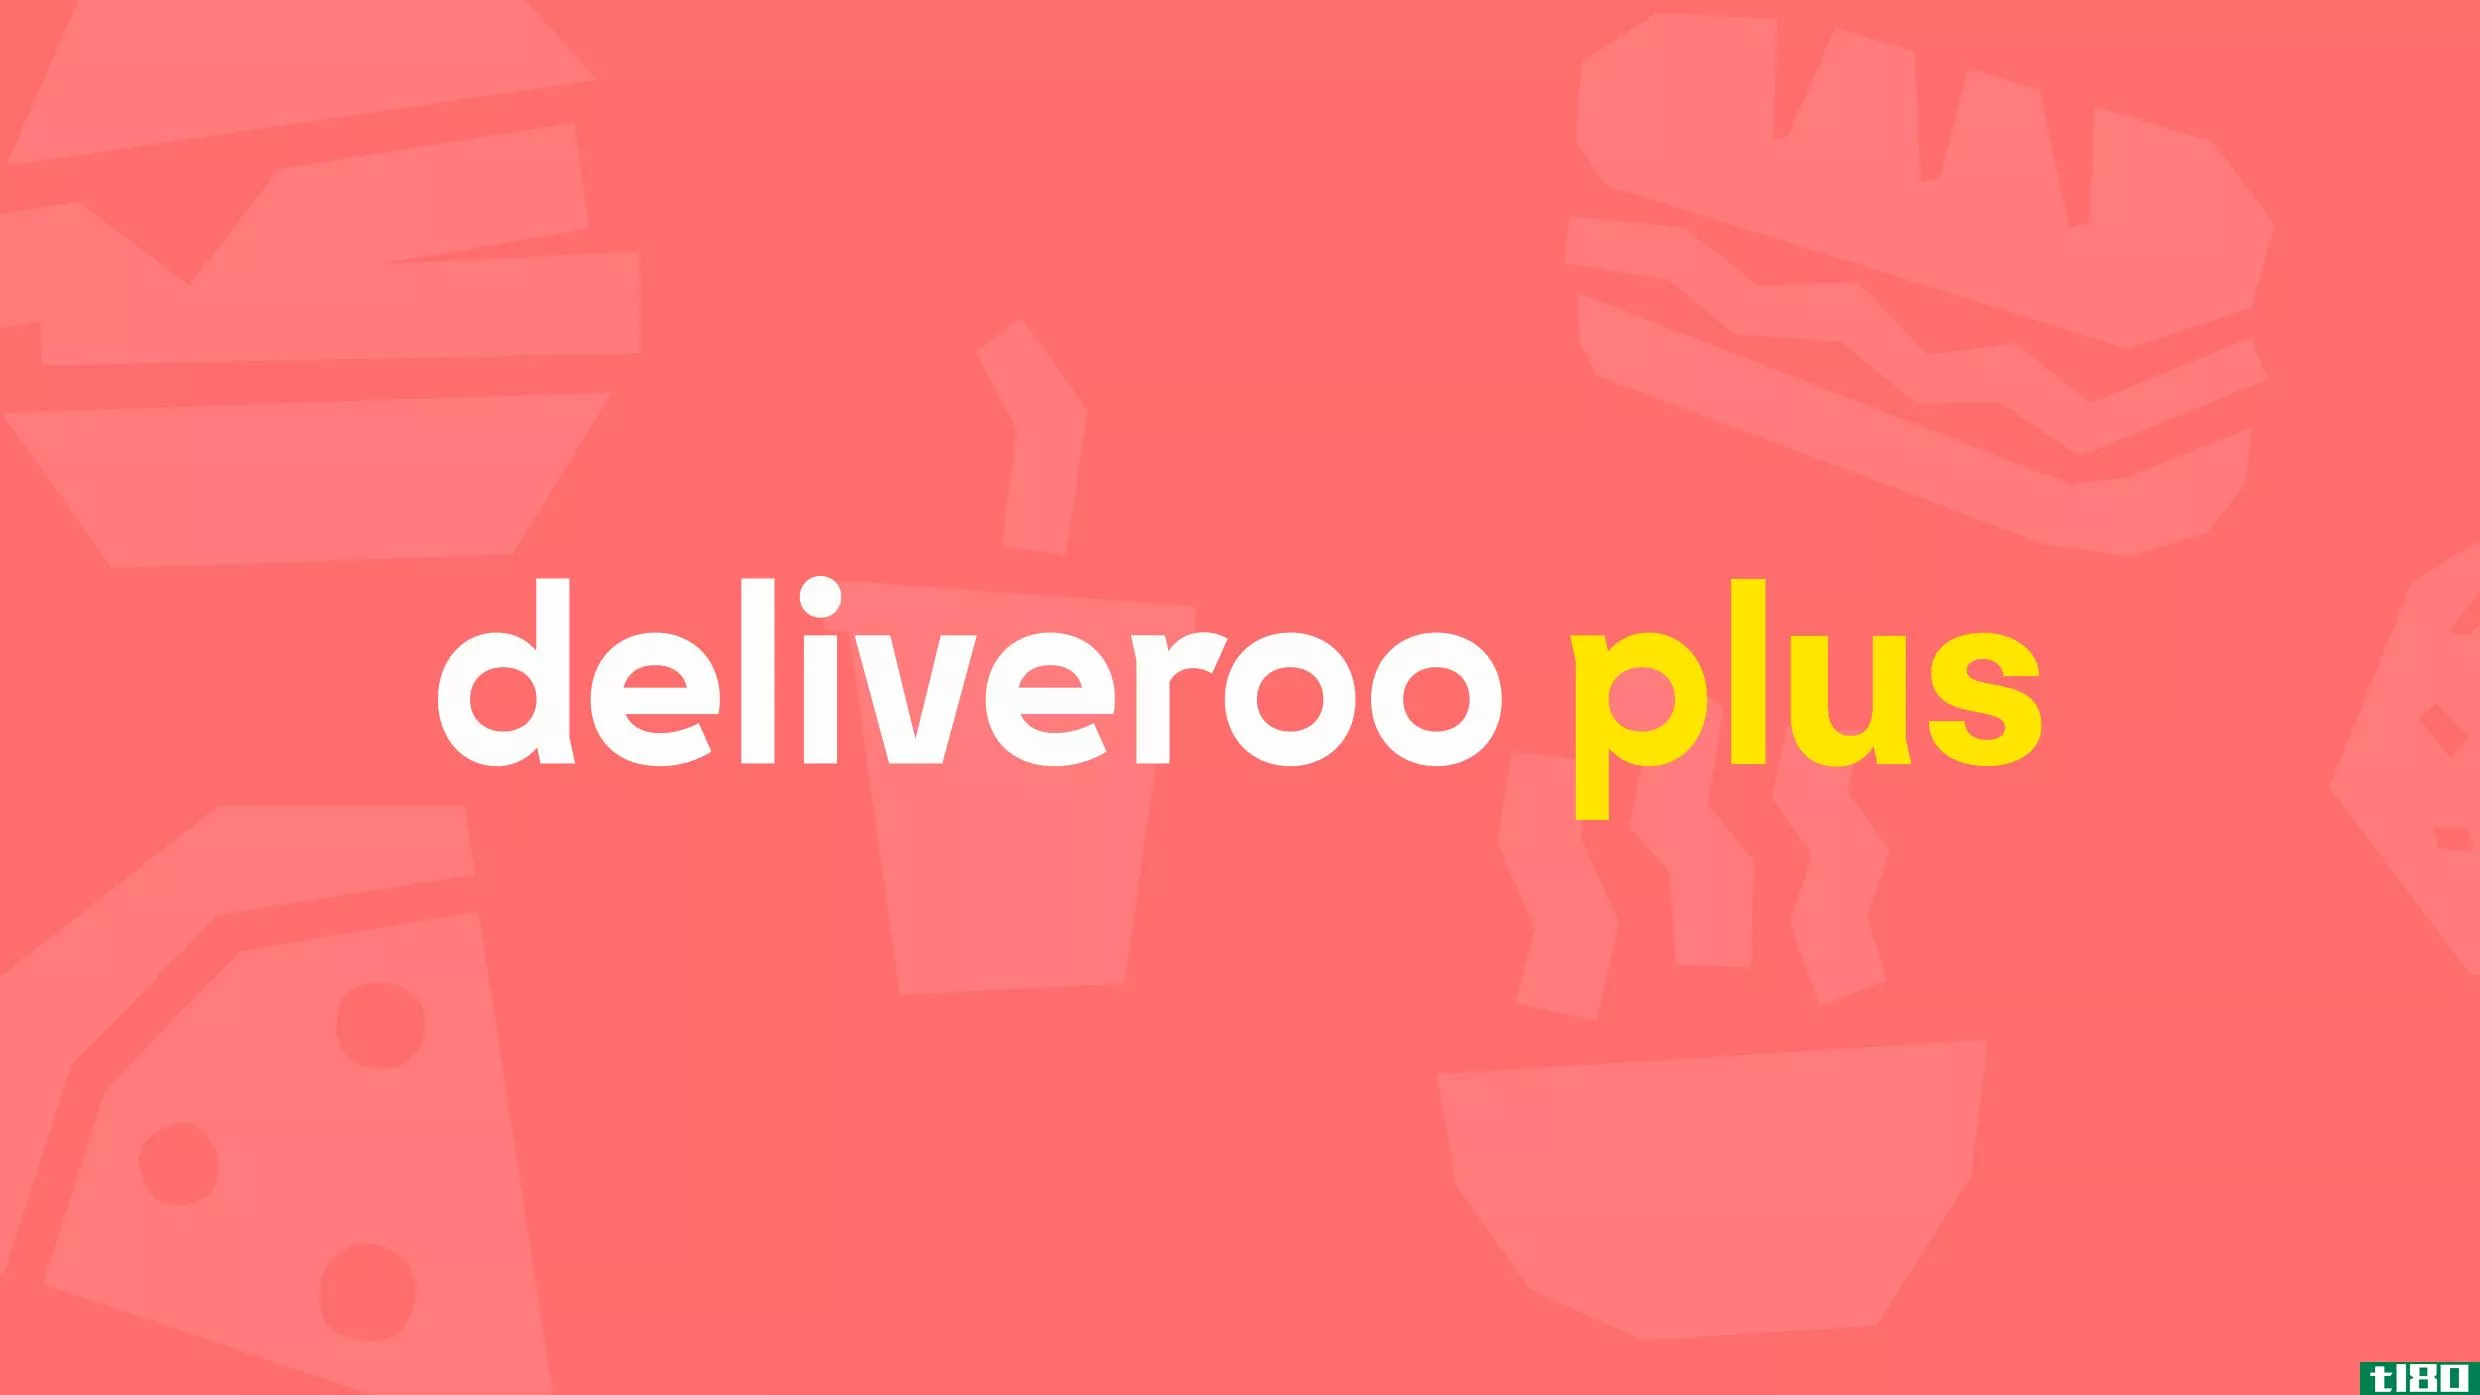 deliveroo在英国推出了每月一次的食品配送服务